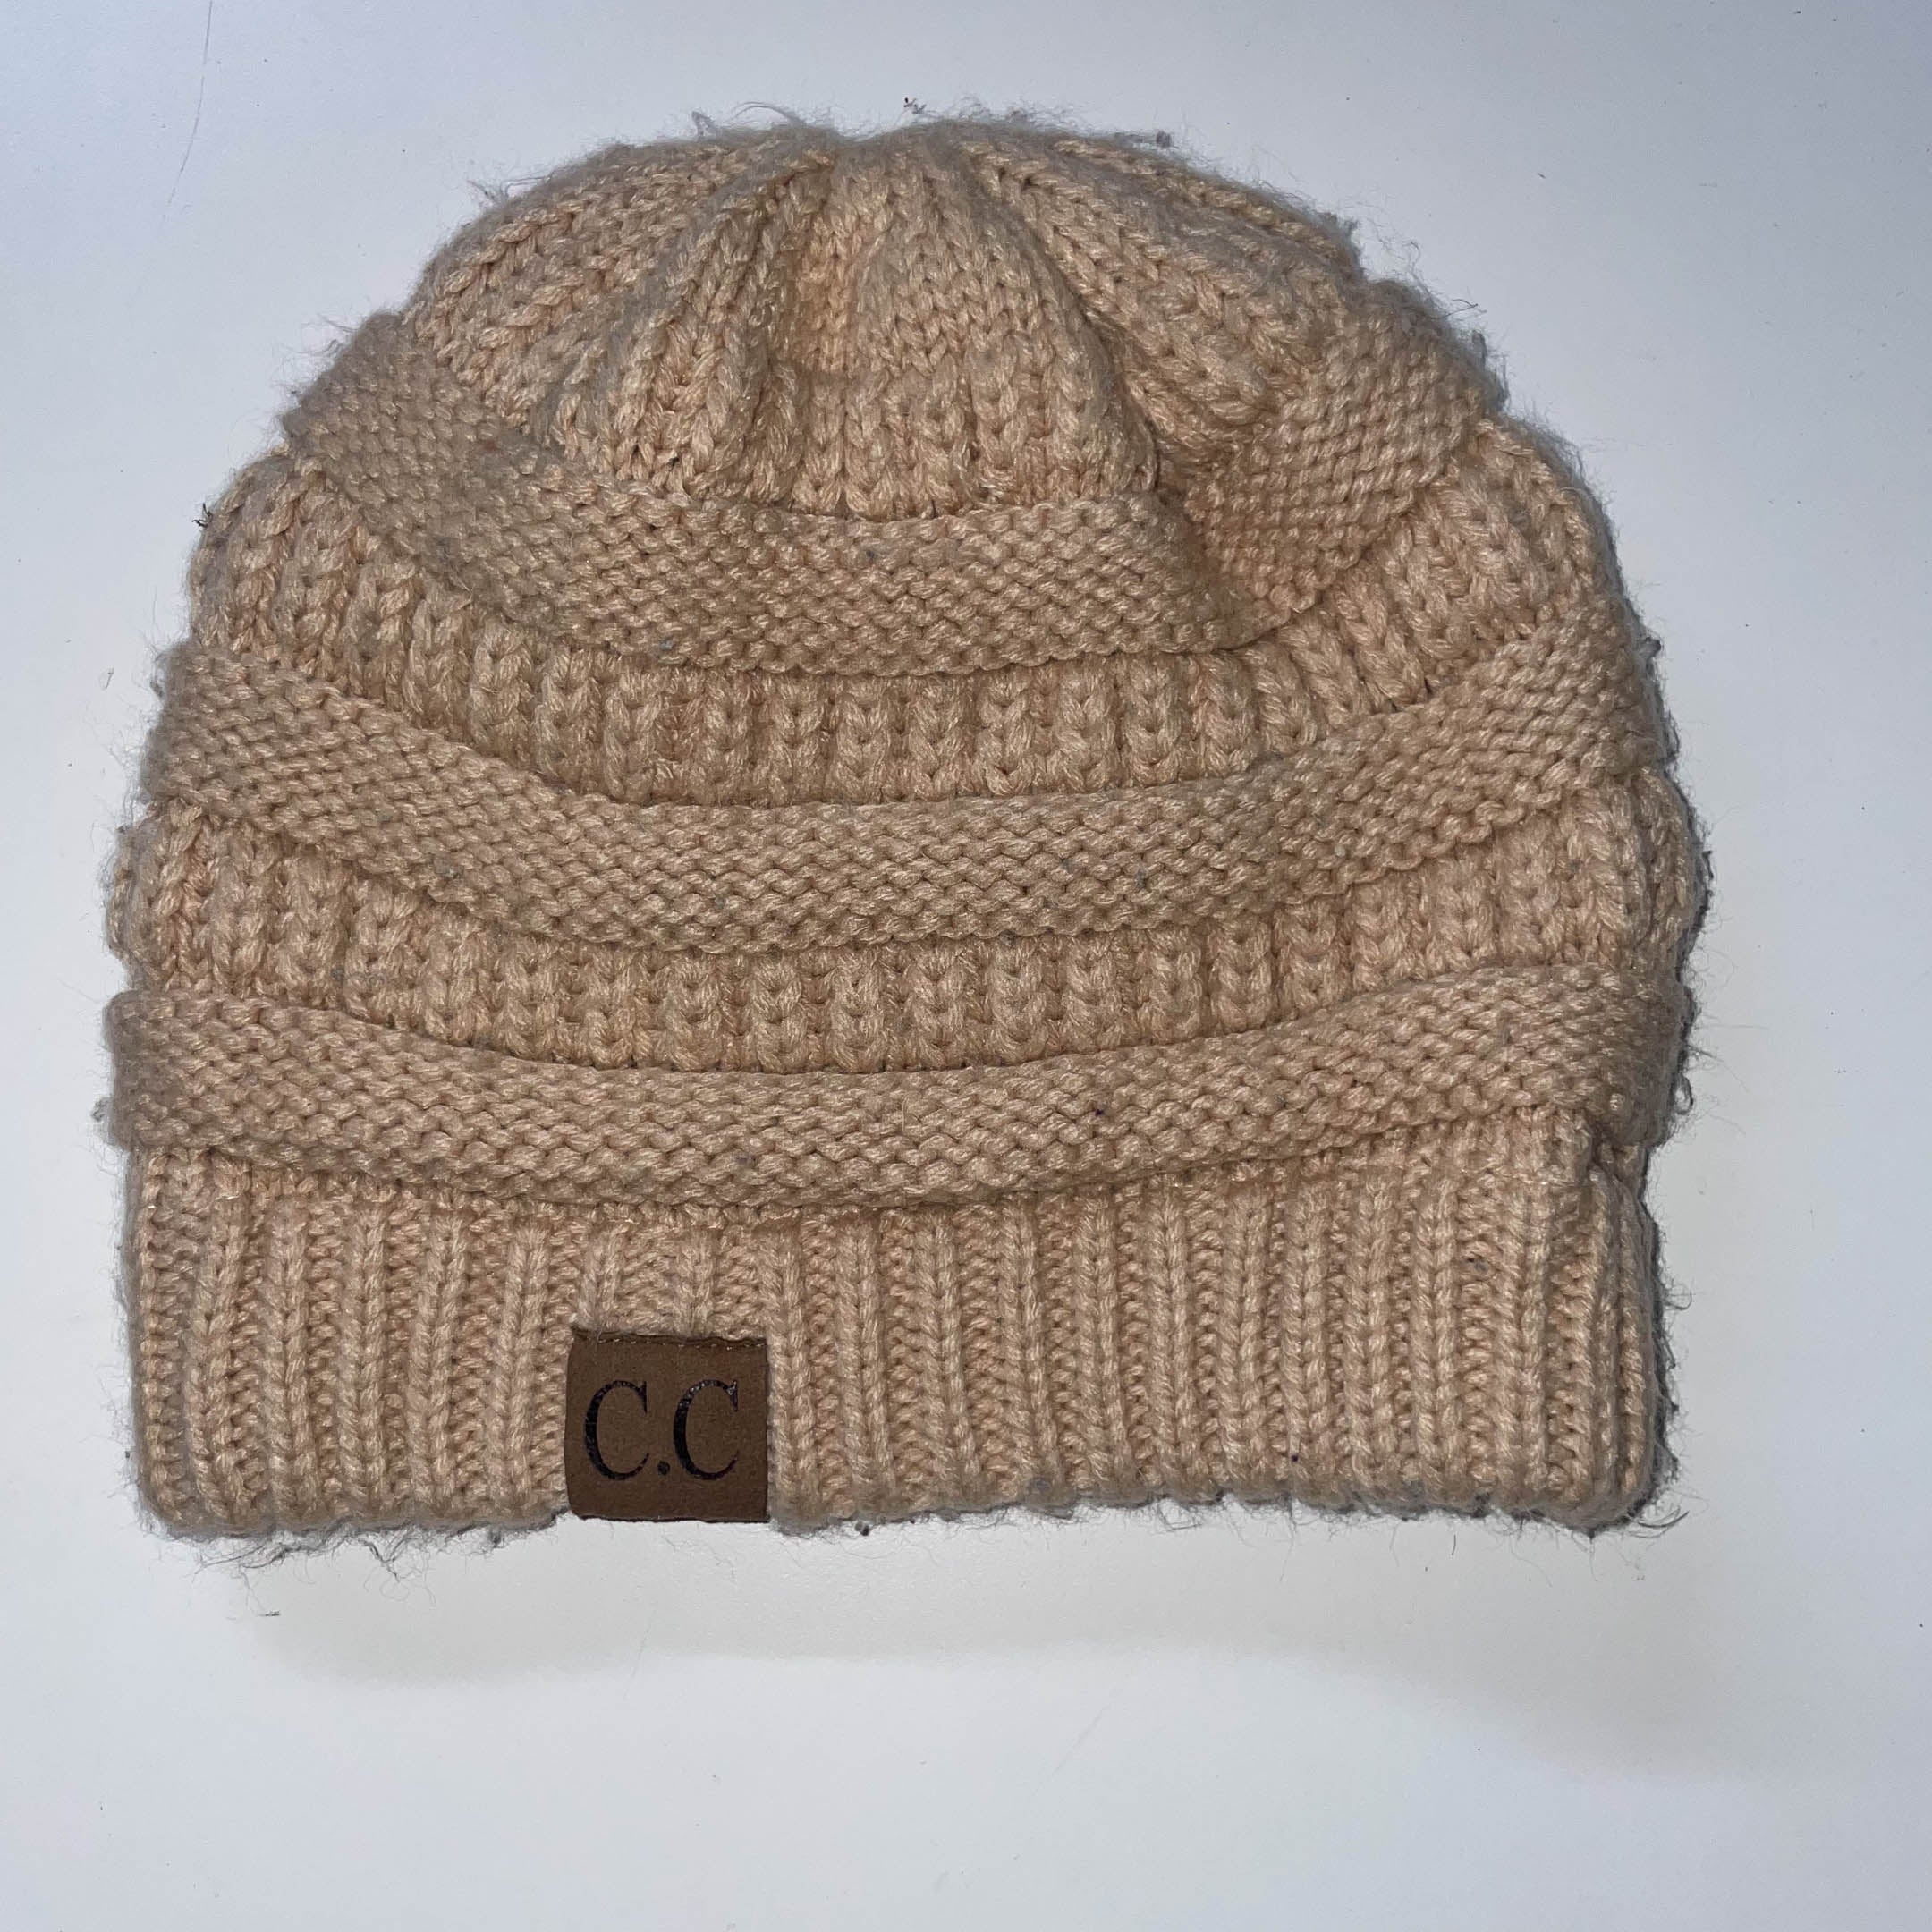 Vintage copycat CC cream knitted beanie hat